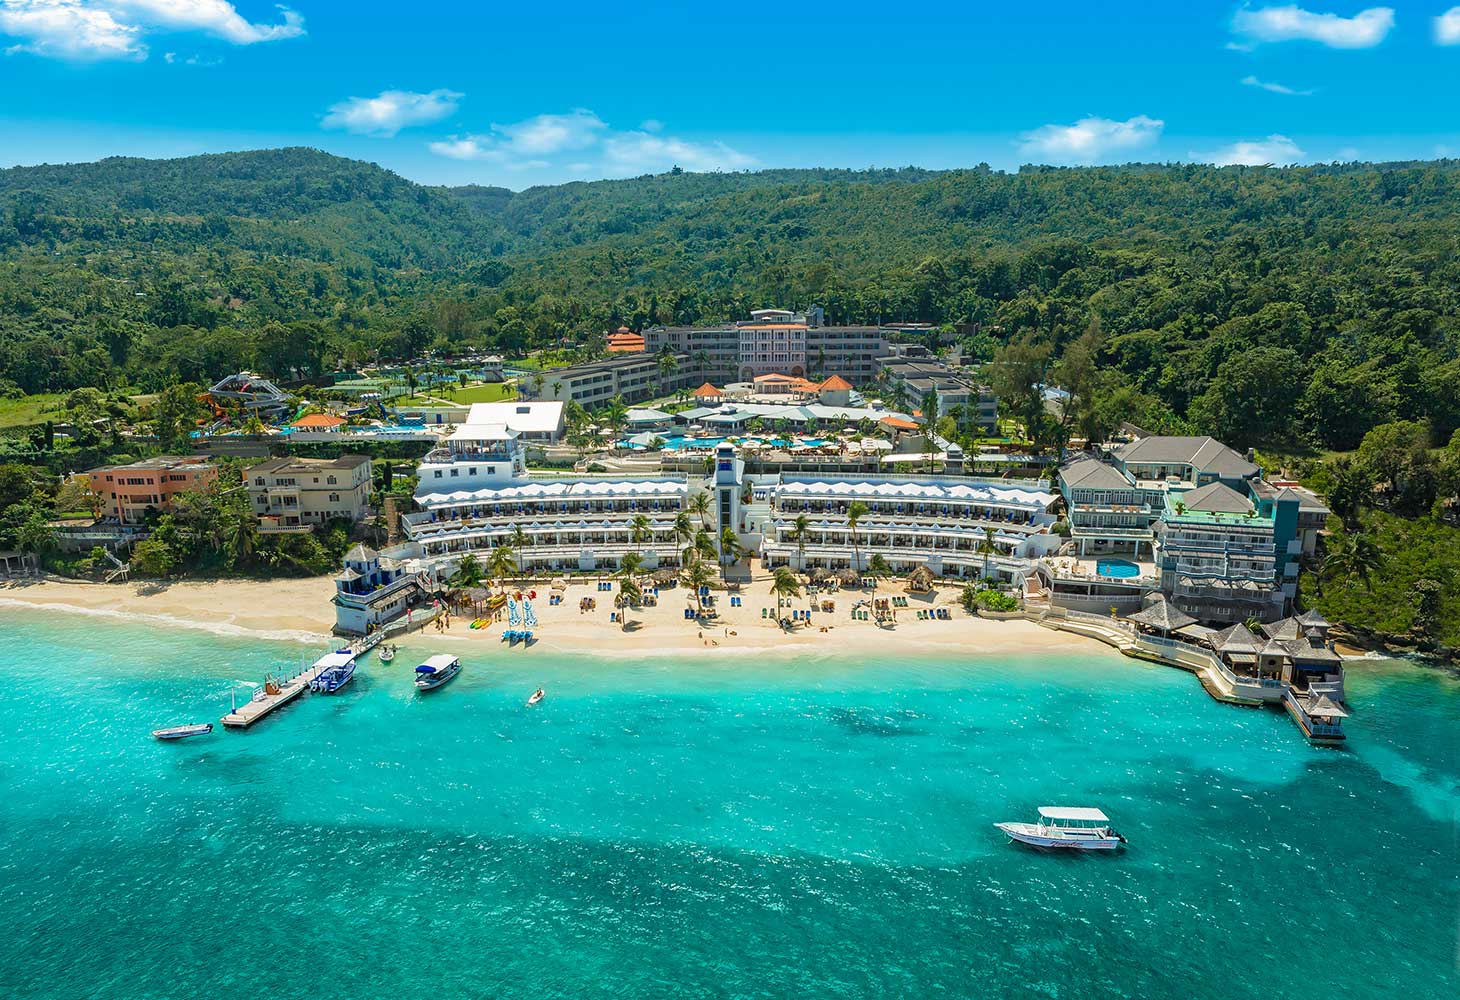 jamaican beach resorts